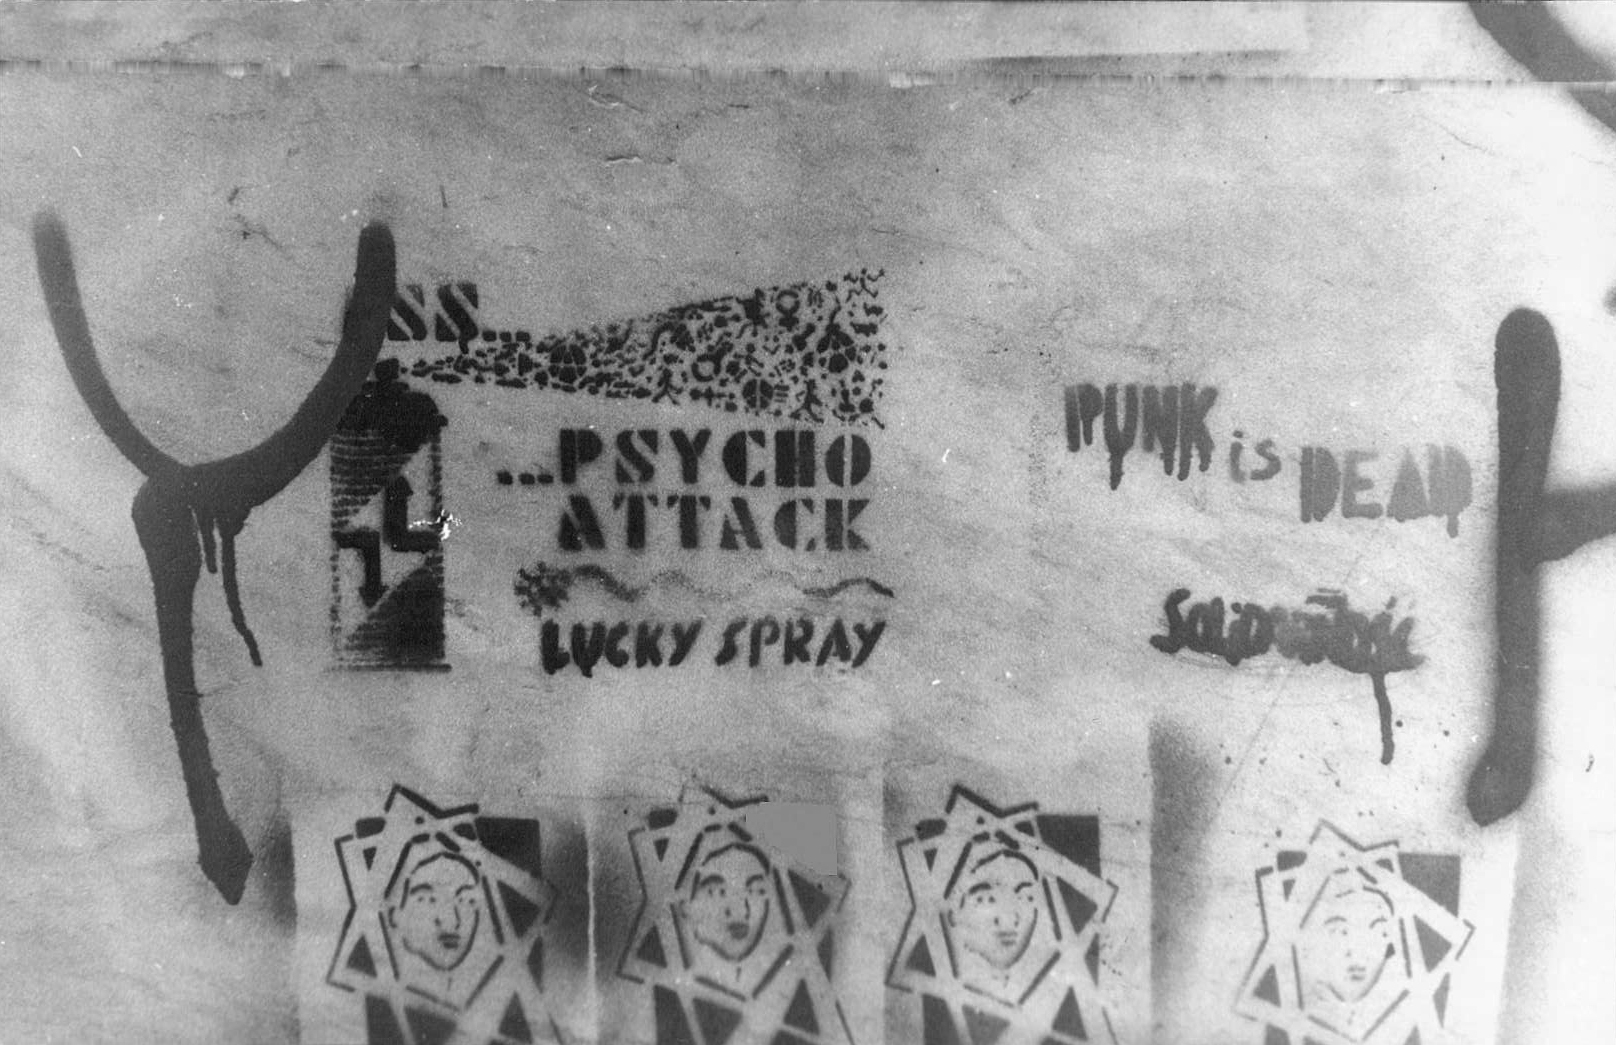 Łódź graffiti, 1989